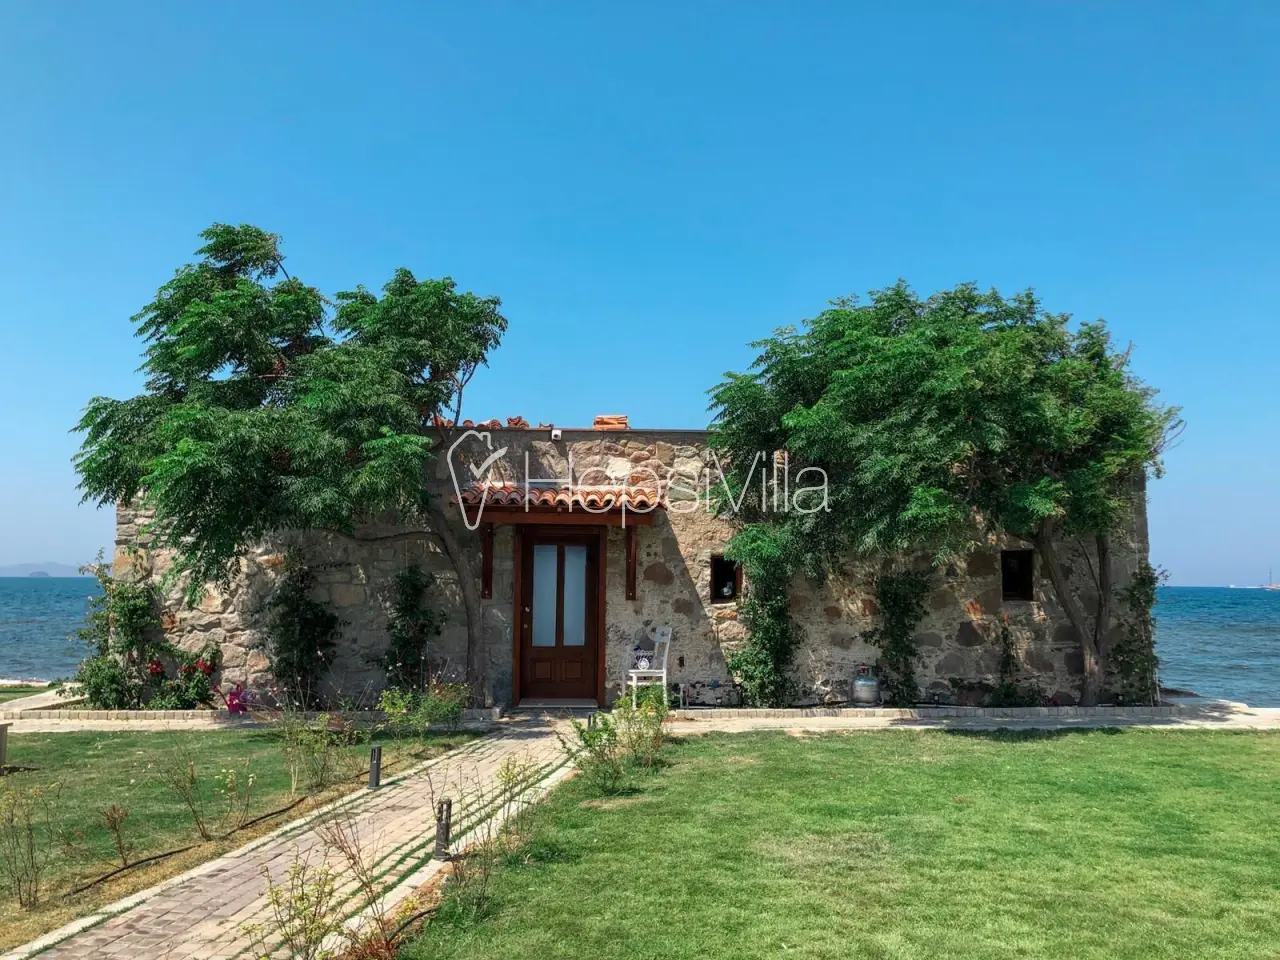 Villa Di Mare, Bodrum Turgutreis’de 4 Kişilik Denize Sıfır Villa - Hepsi Villa